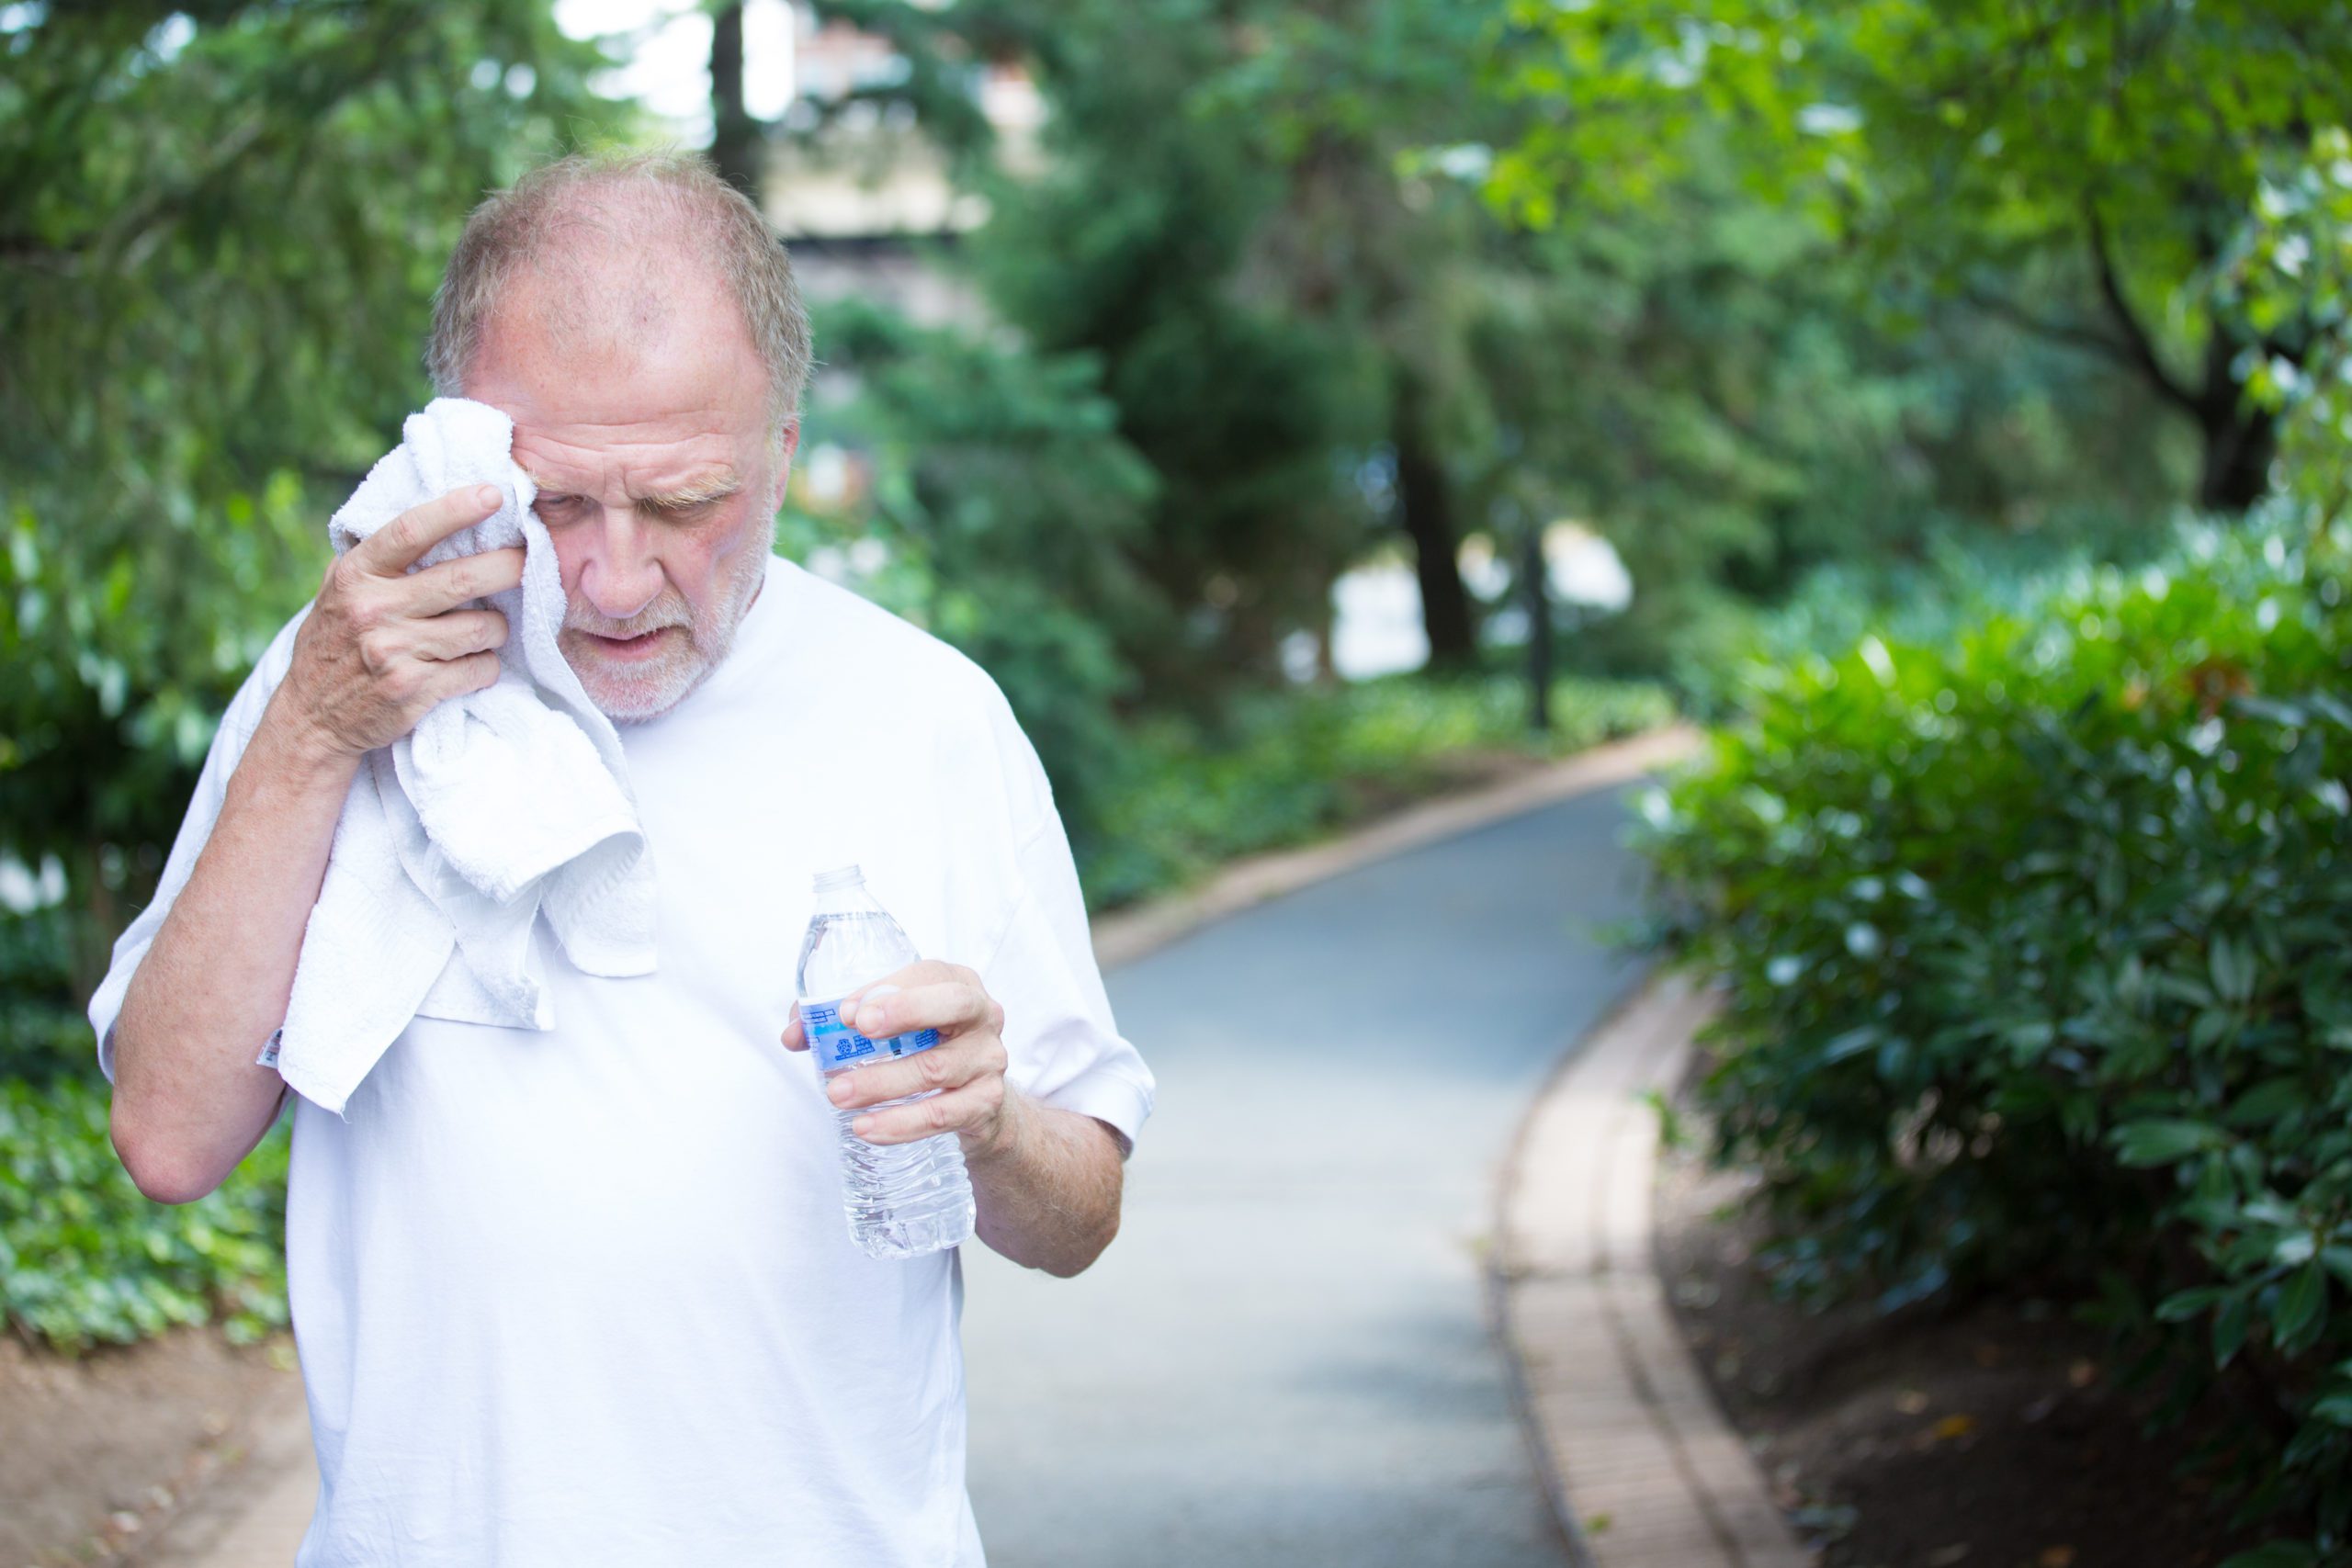 Symptoms of dehydration in elderly